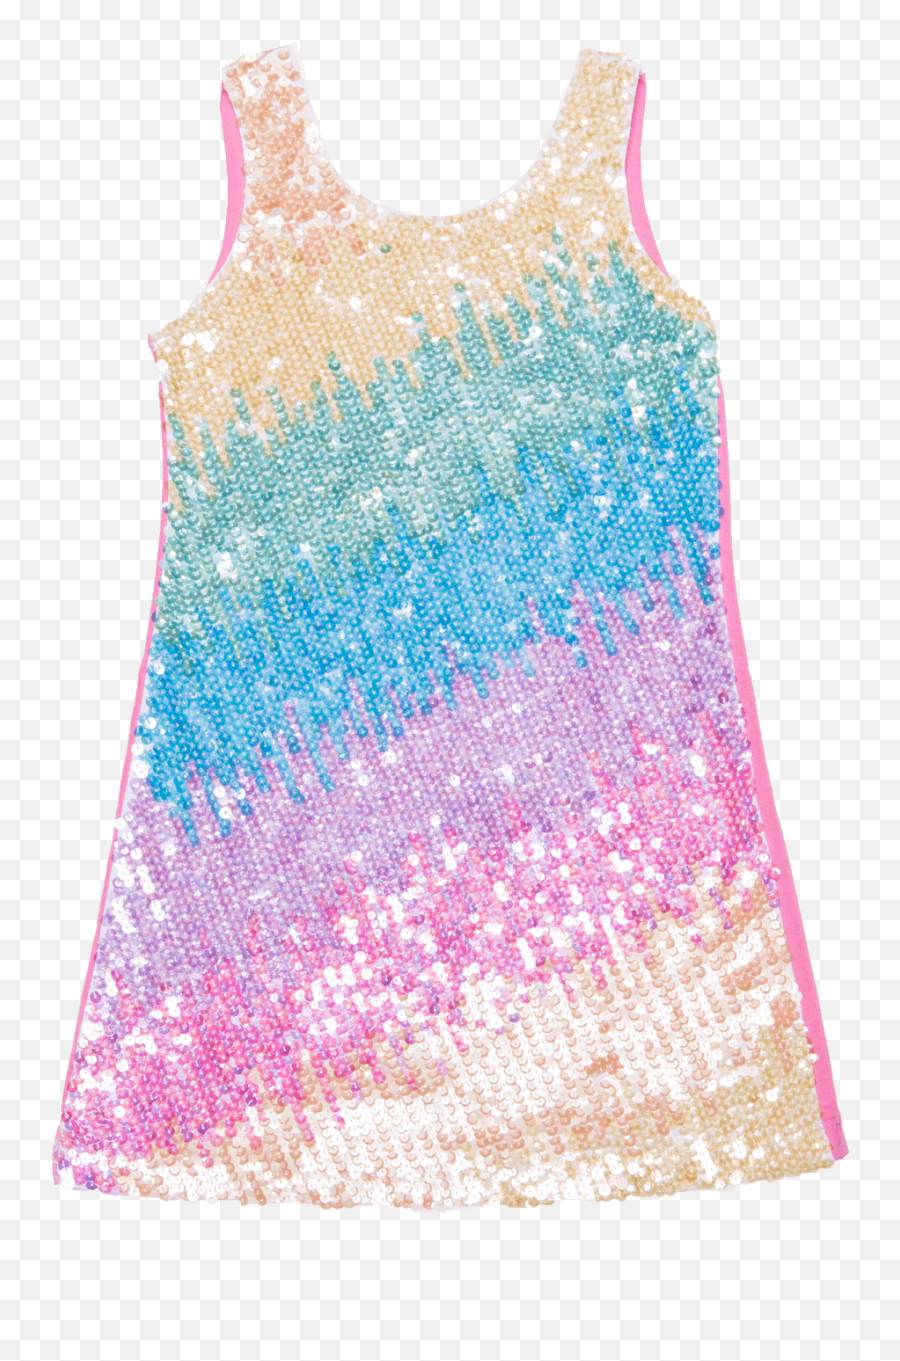 Zoe Rainbow Sequin Ombre Dress - Rainbow Sequins Png,Sequins Png